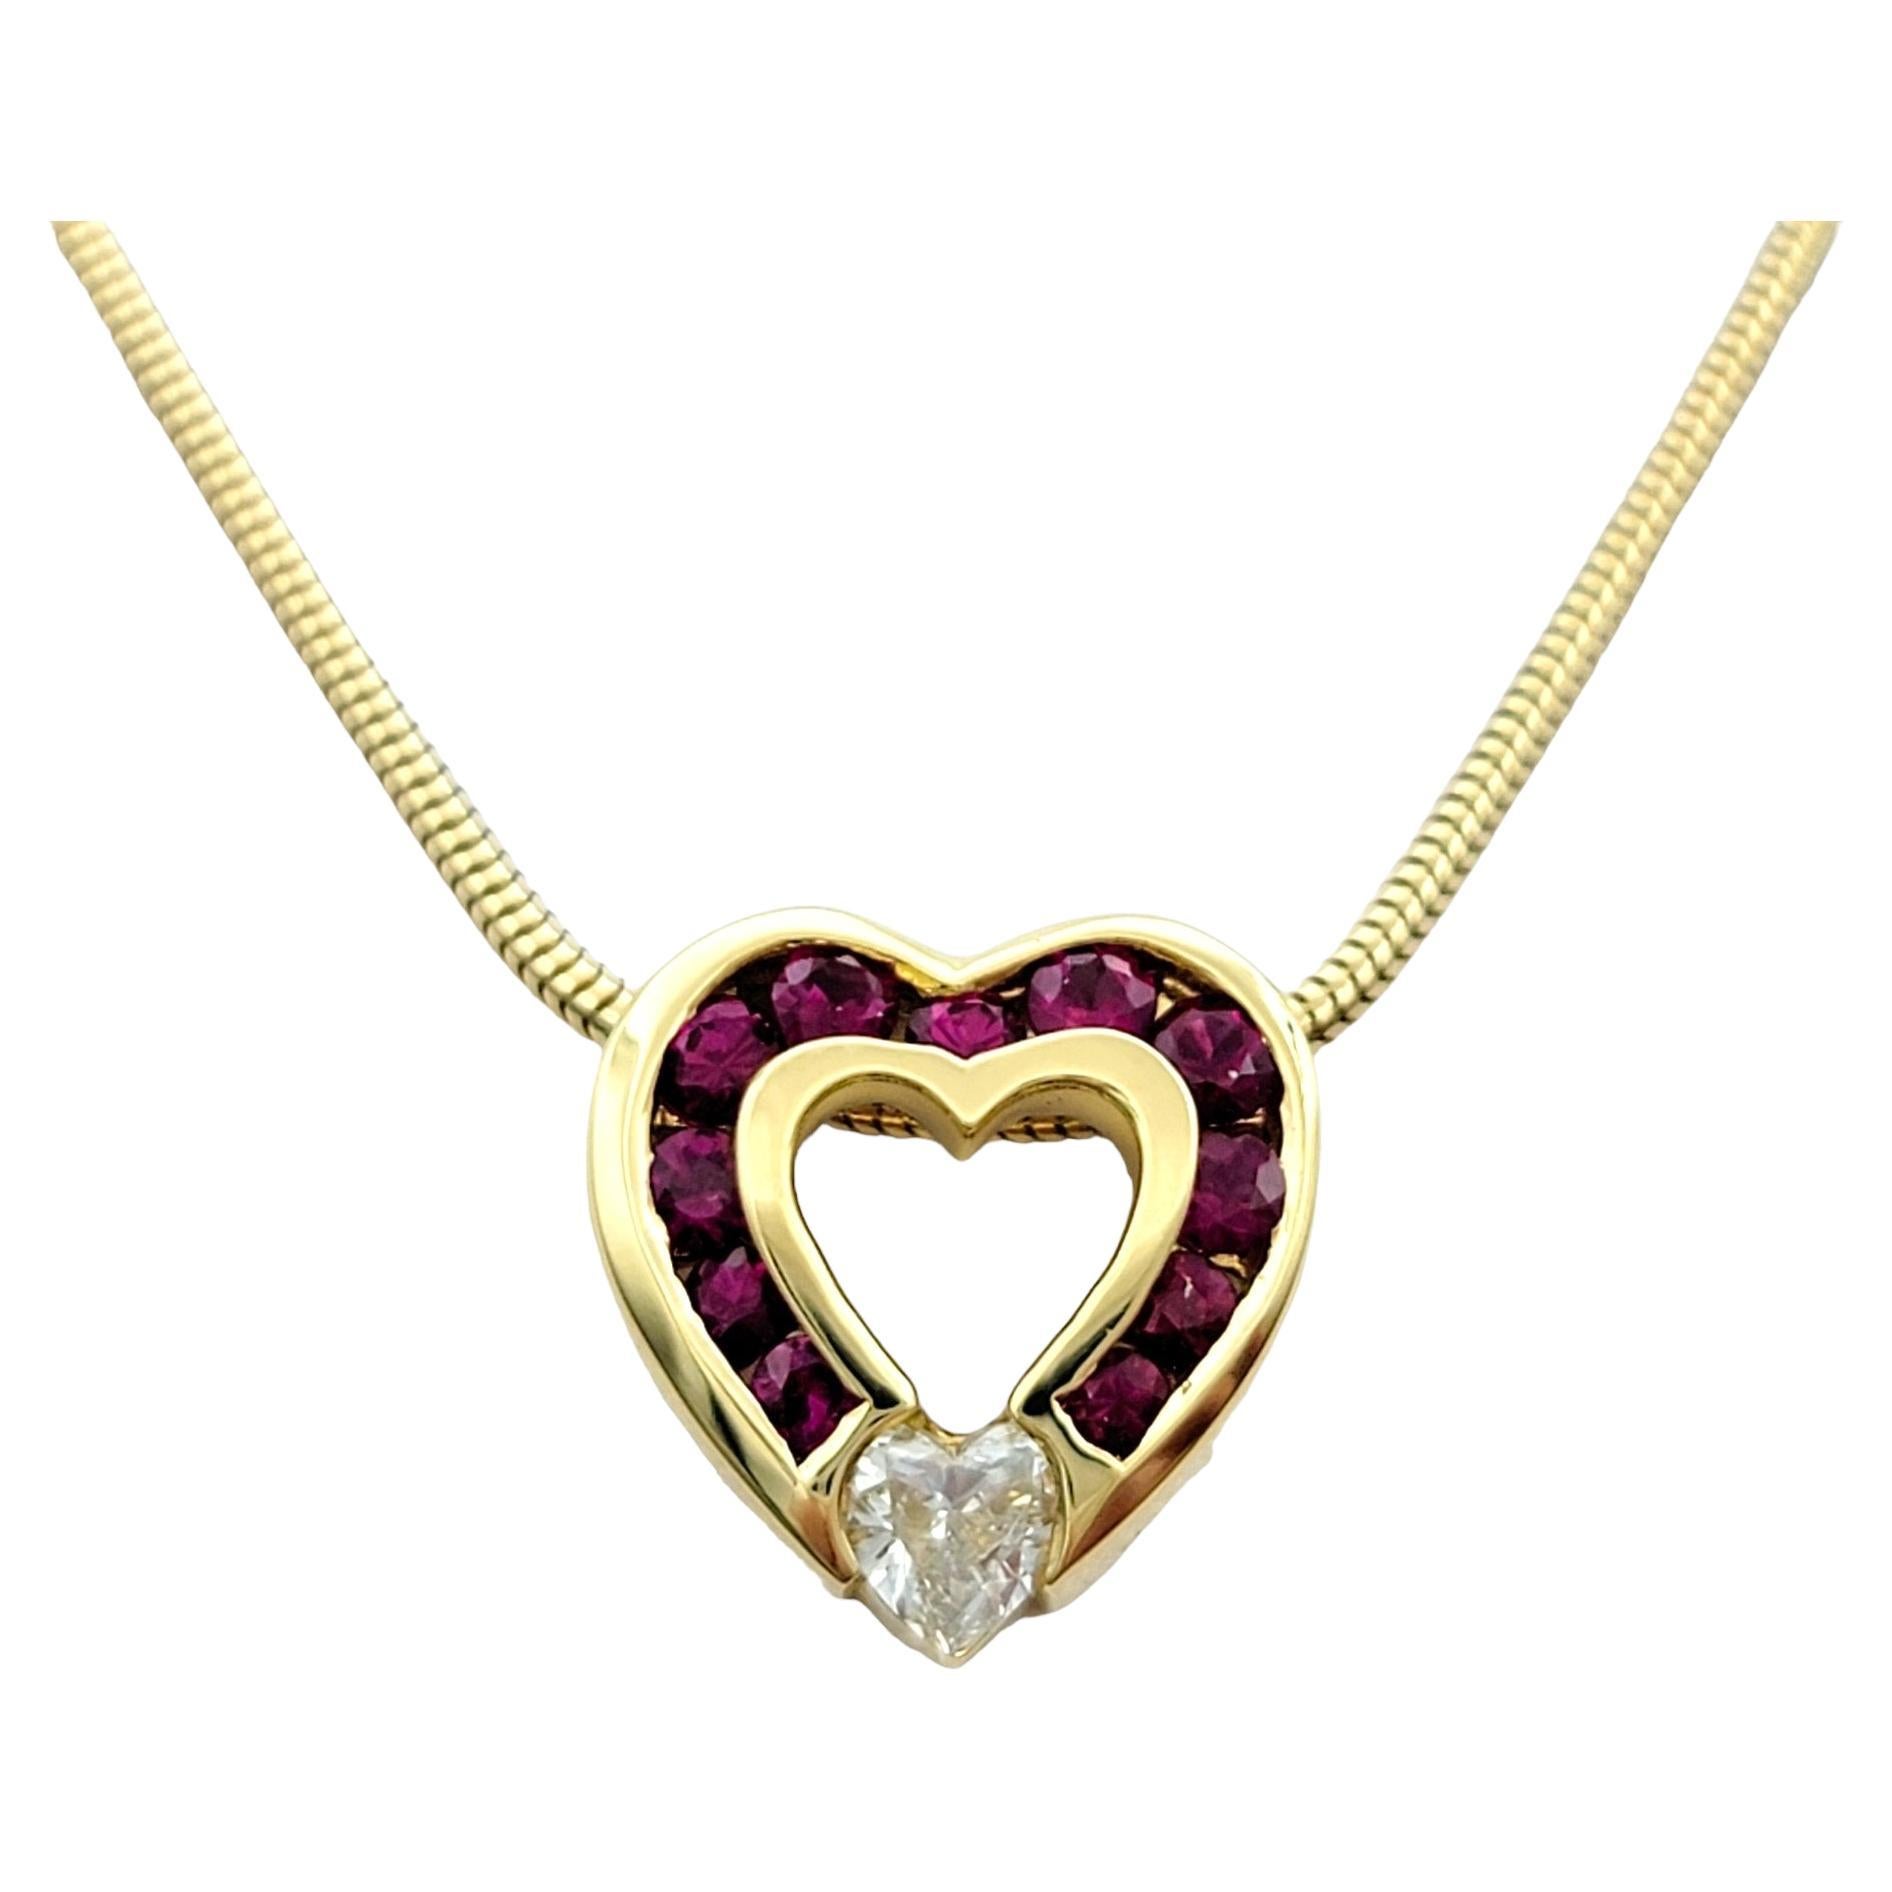 Charles Krypell, collier à cœur ouvert en or jaune 18 carats, diamants et rubis